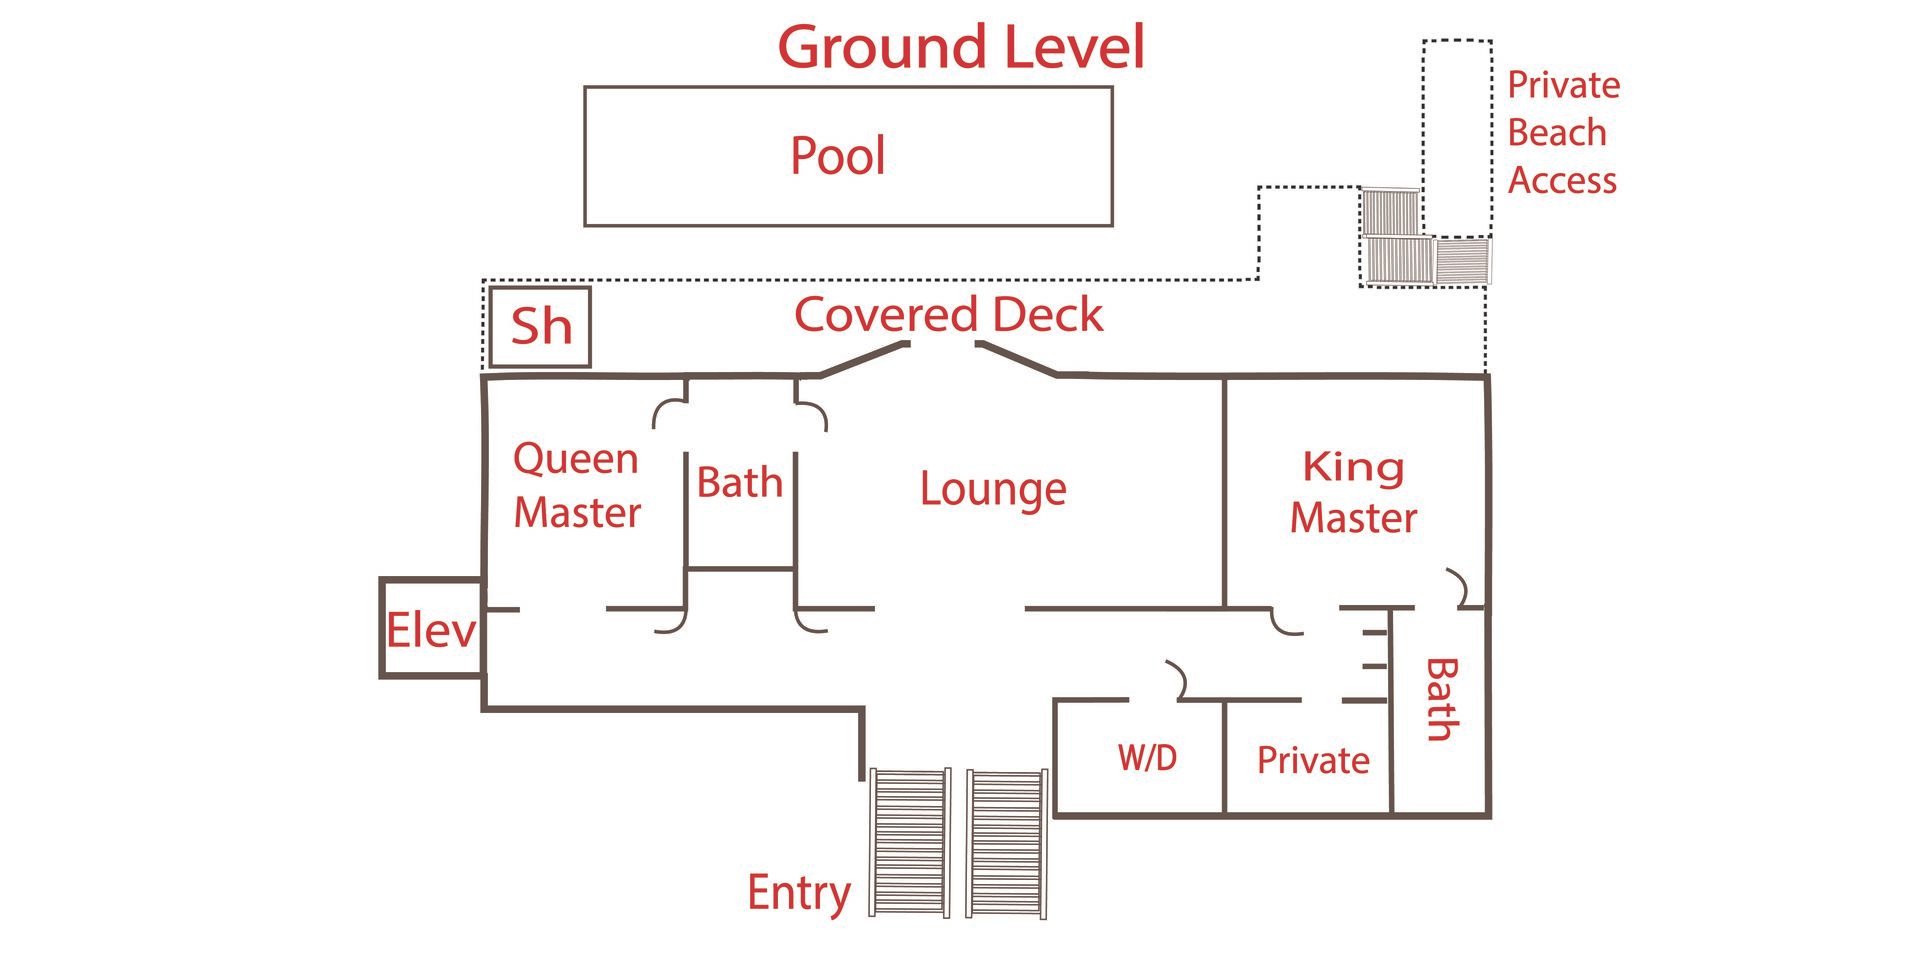 Floor Plan - Ground Level